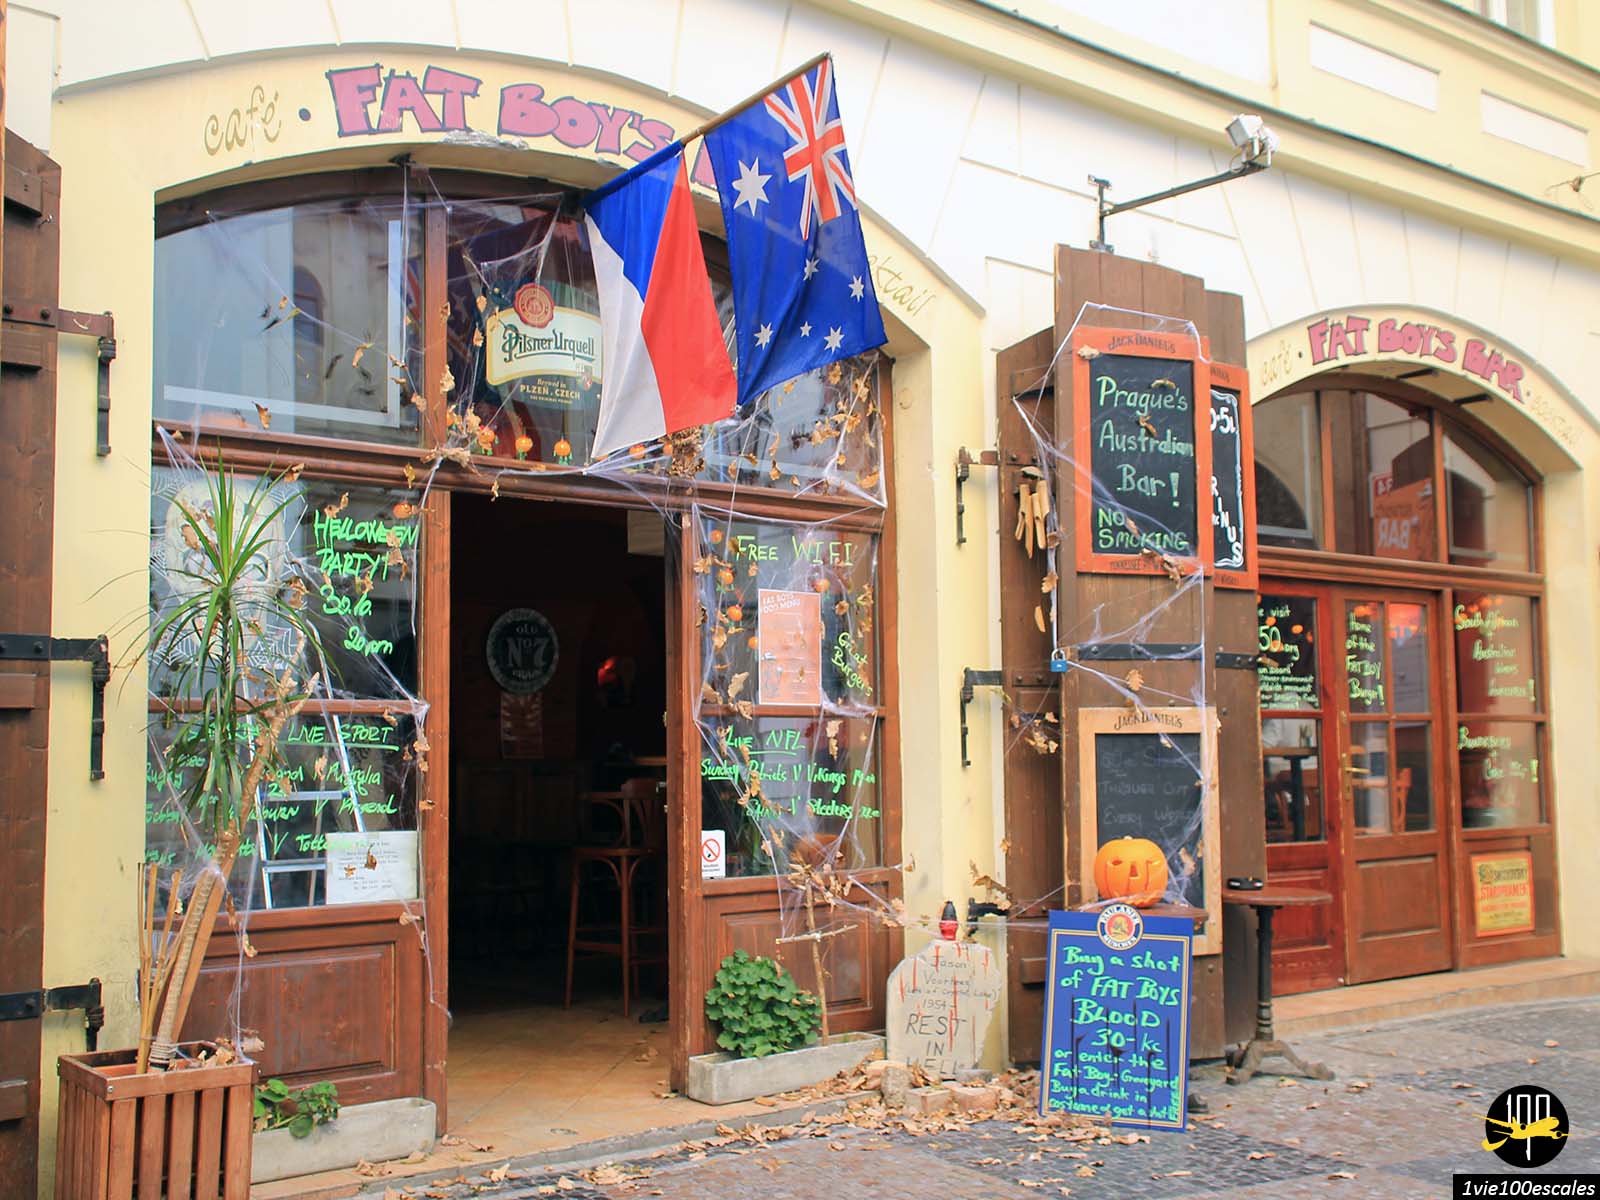 Le Fat Boy's Bar de Prague joliment décoré pour Halloween